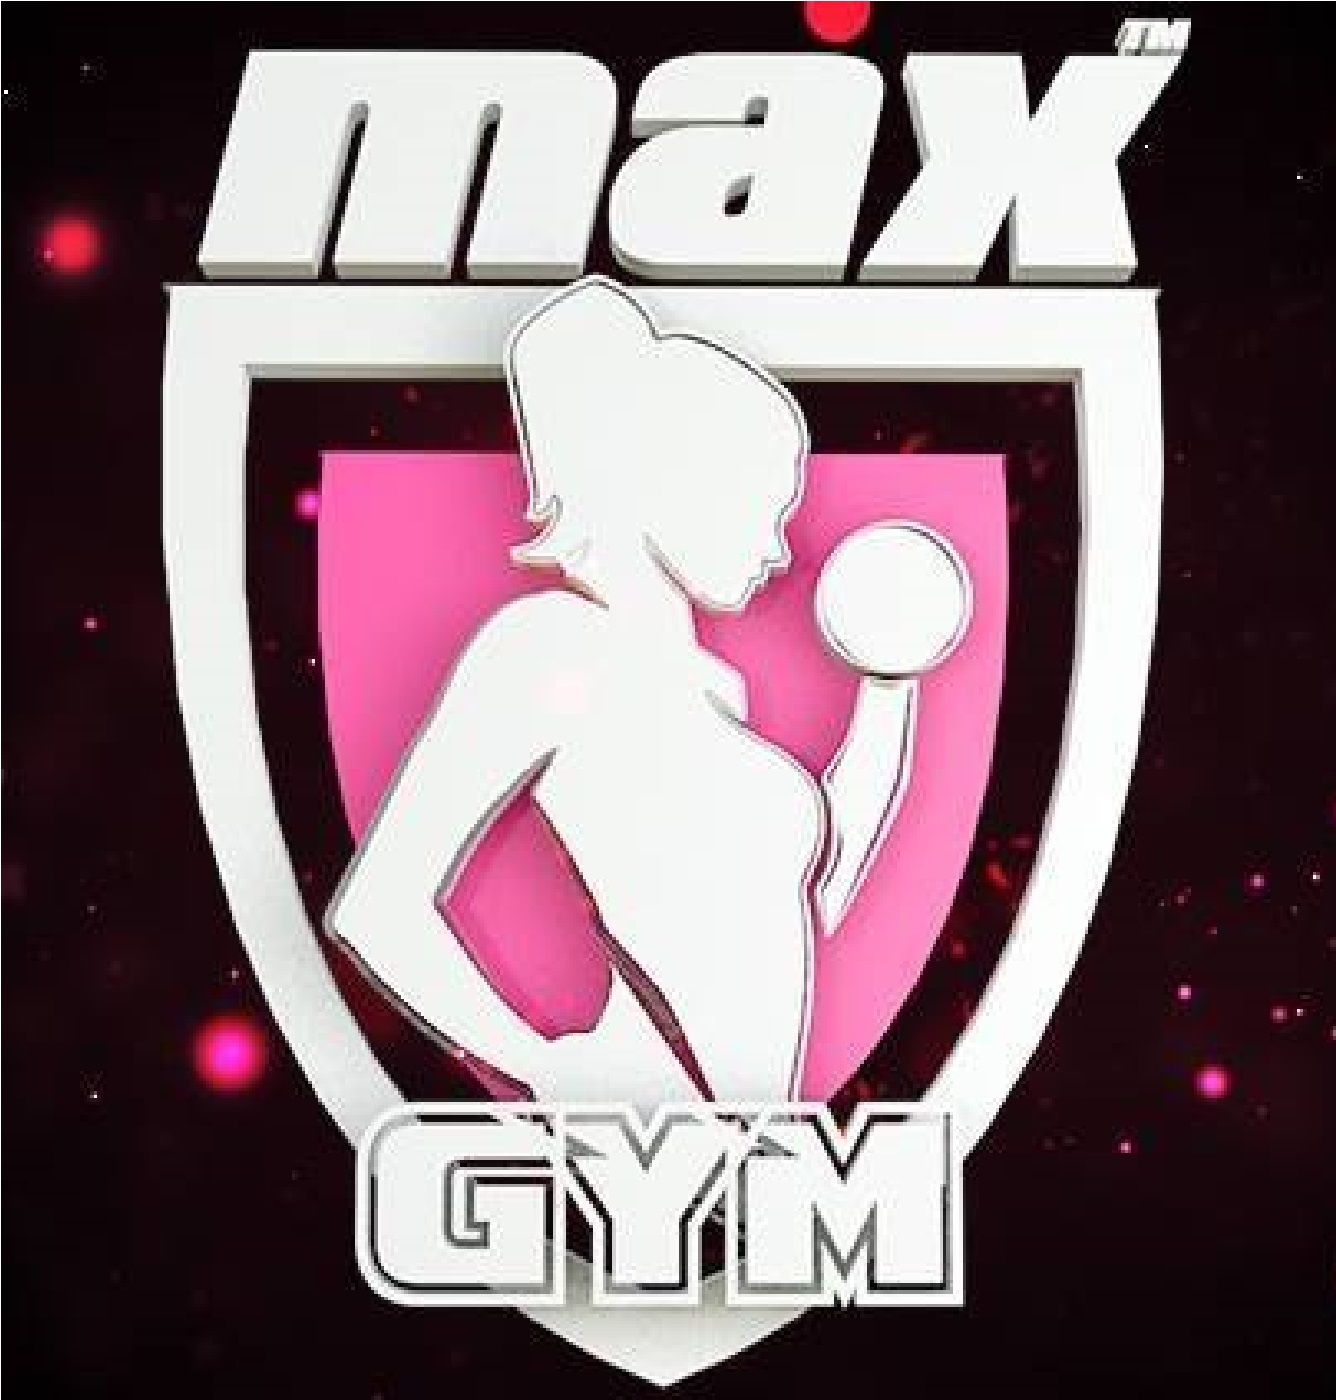 Max Gym